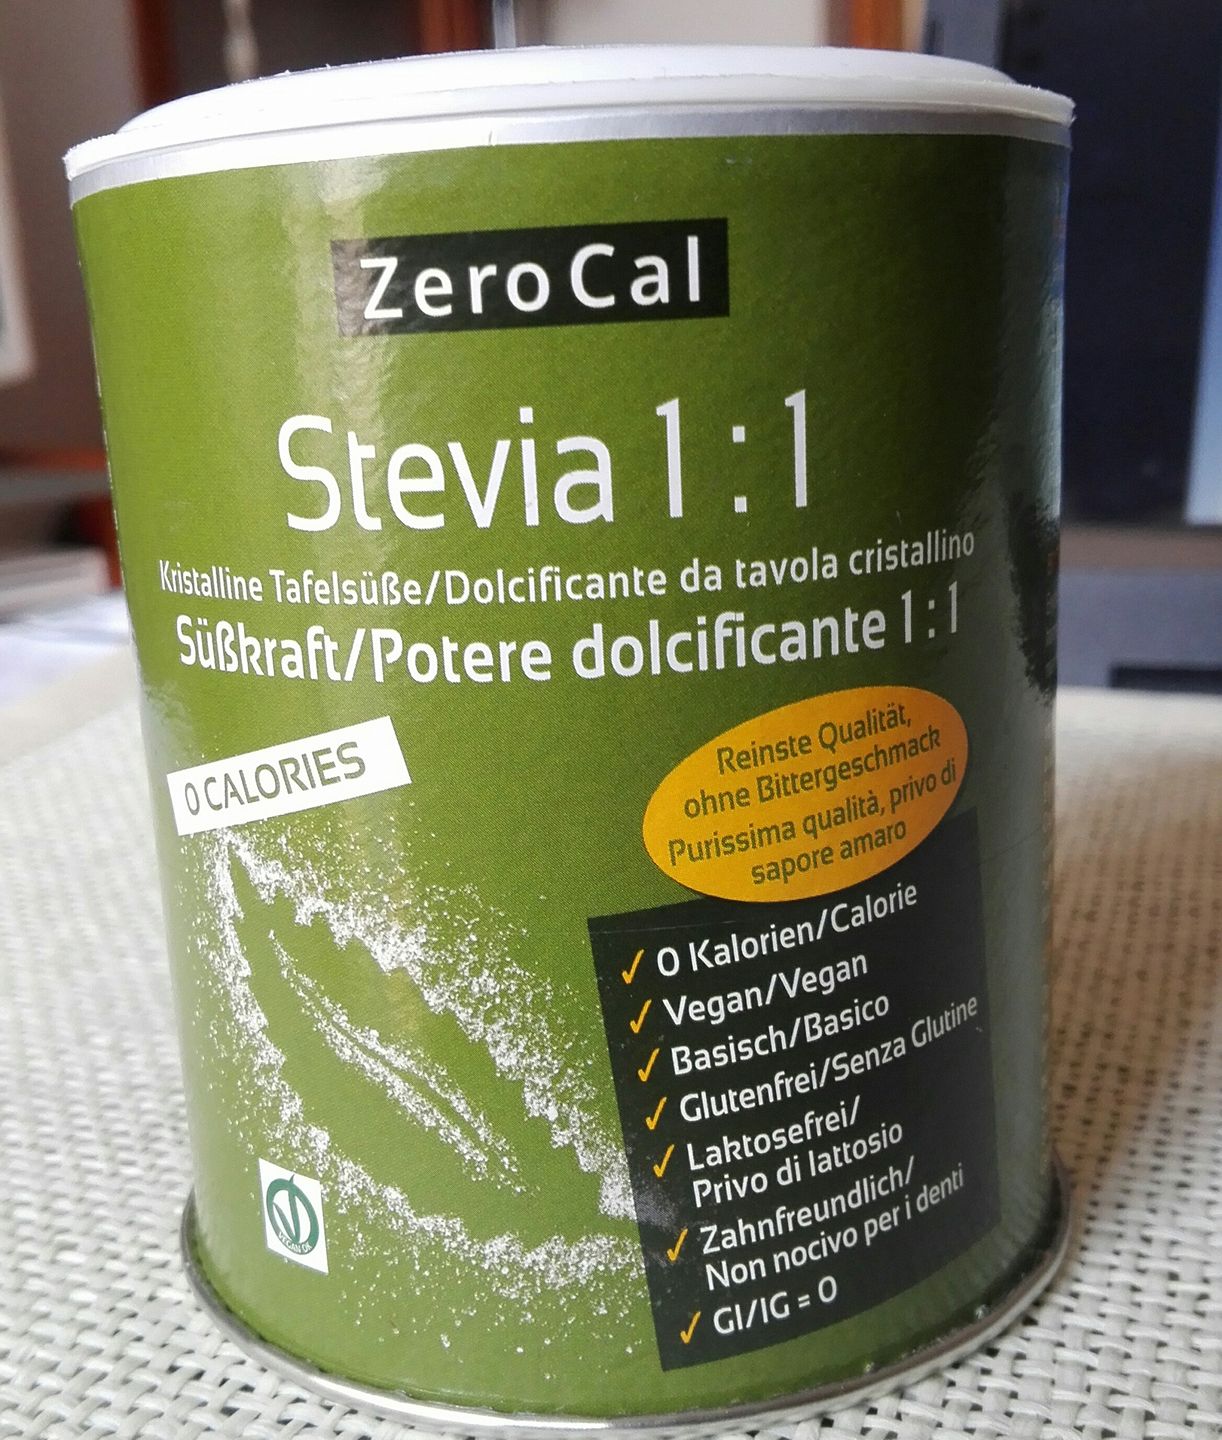 Zero Cal Stevia 1:1 - Veganblog - ricette e prodotti dal mondo vegan